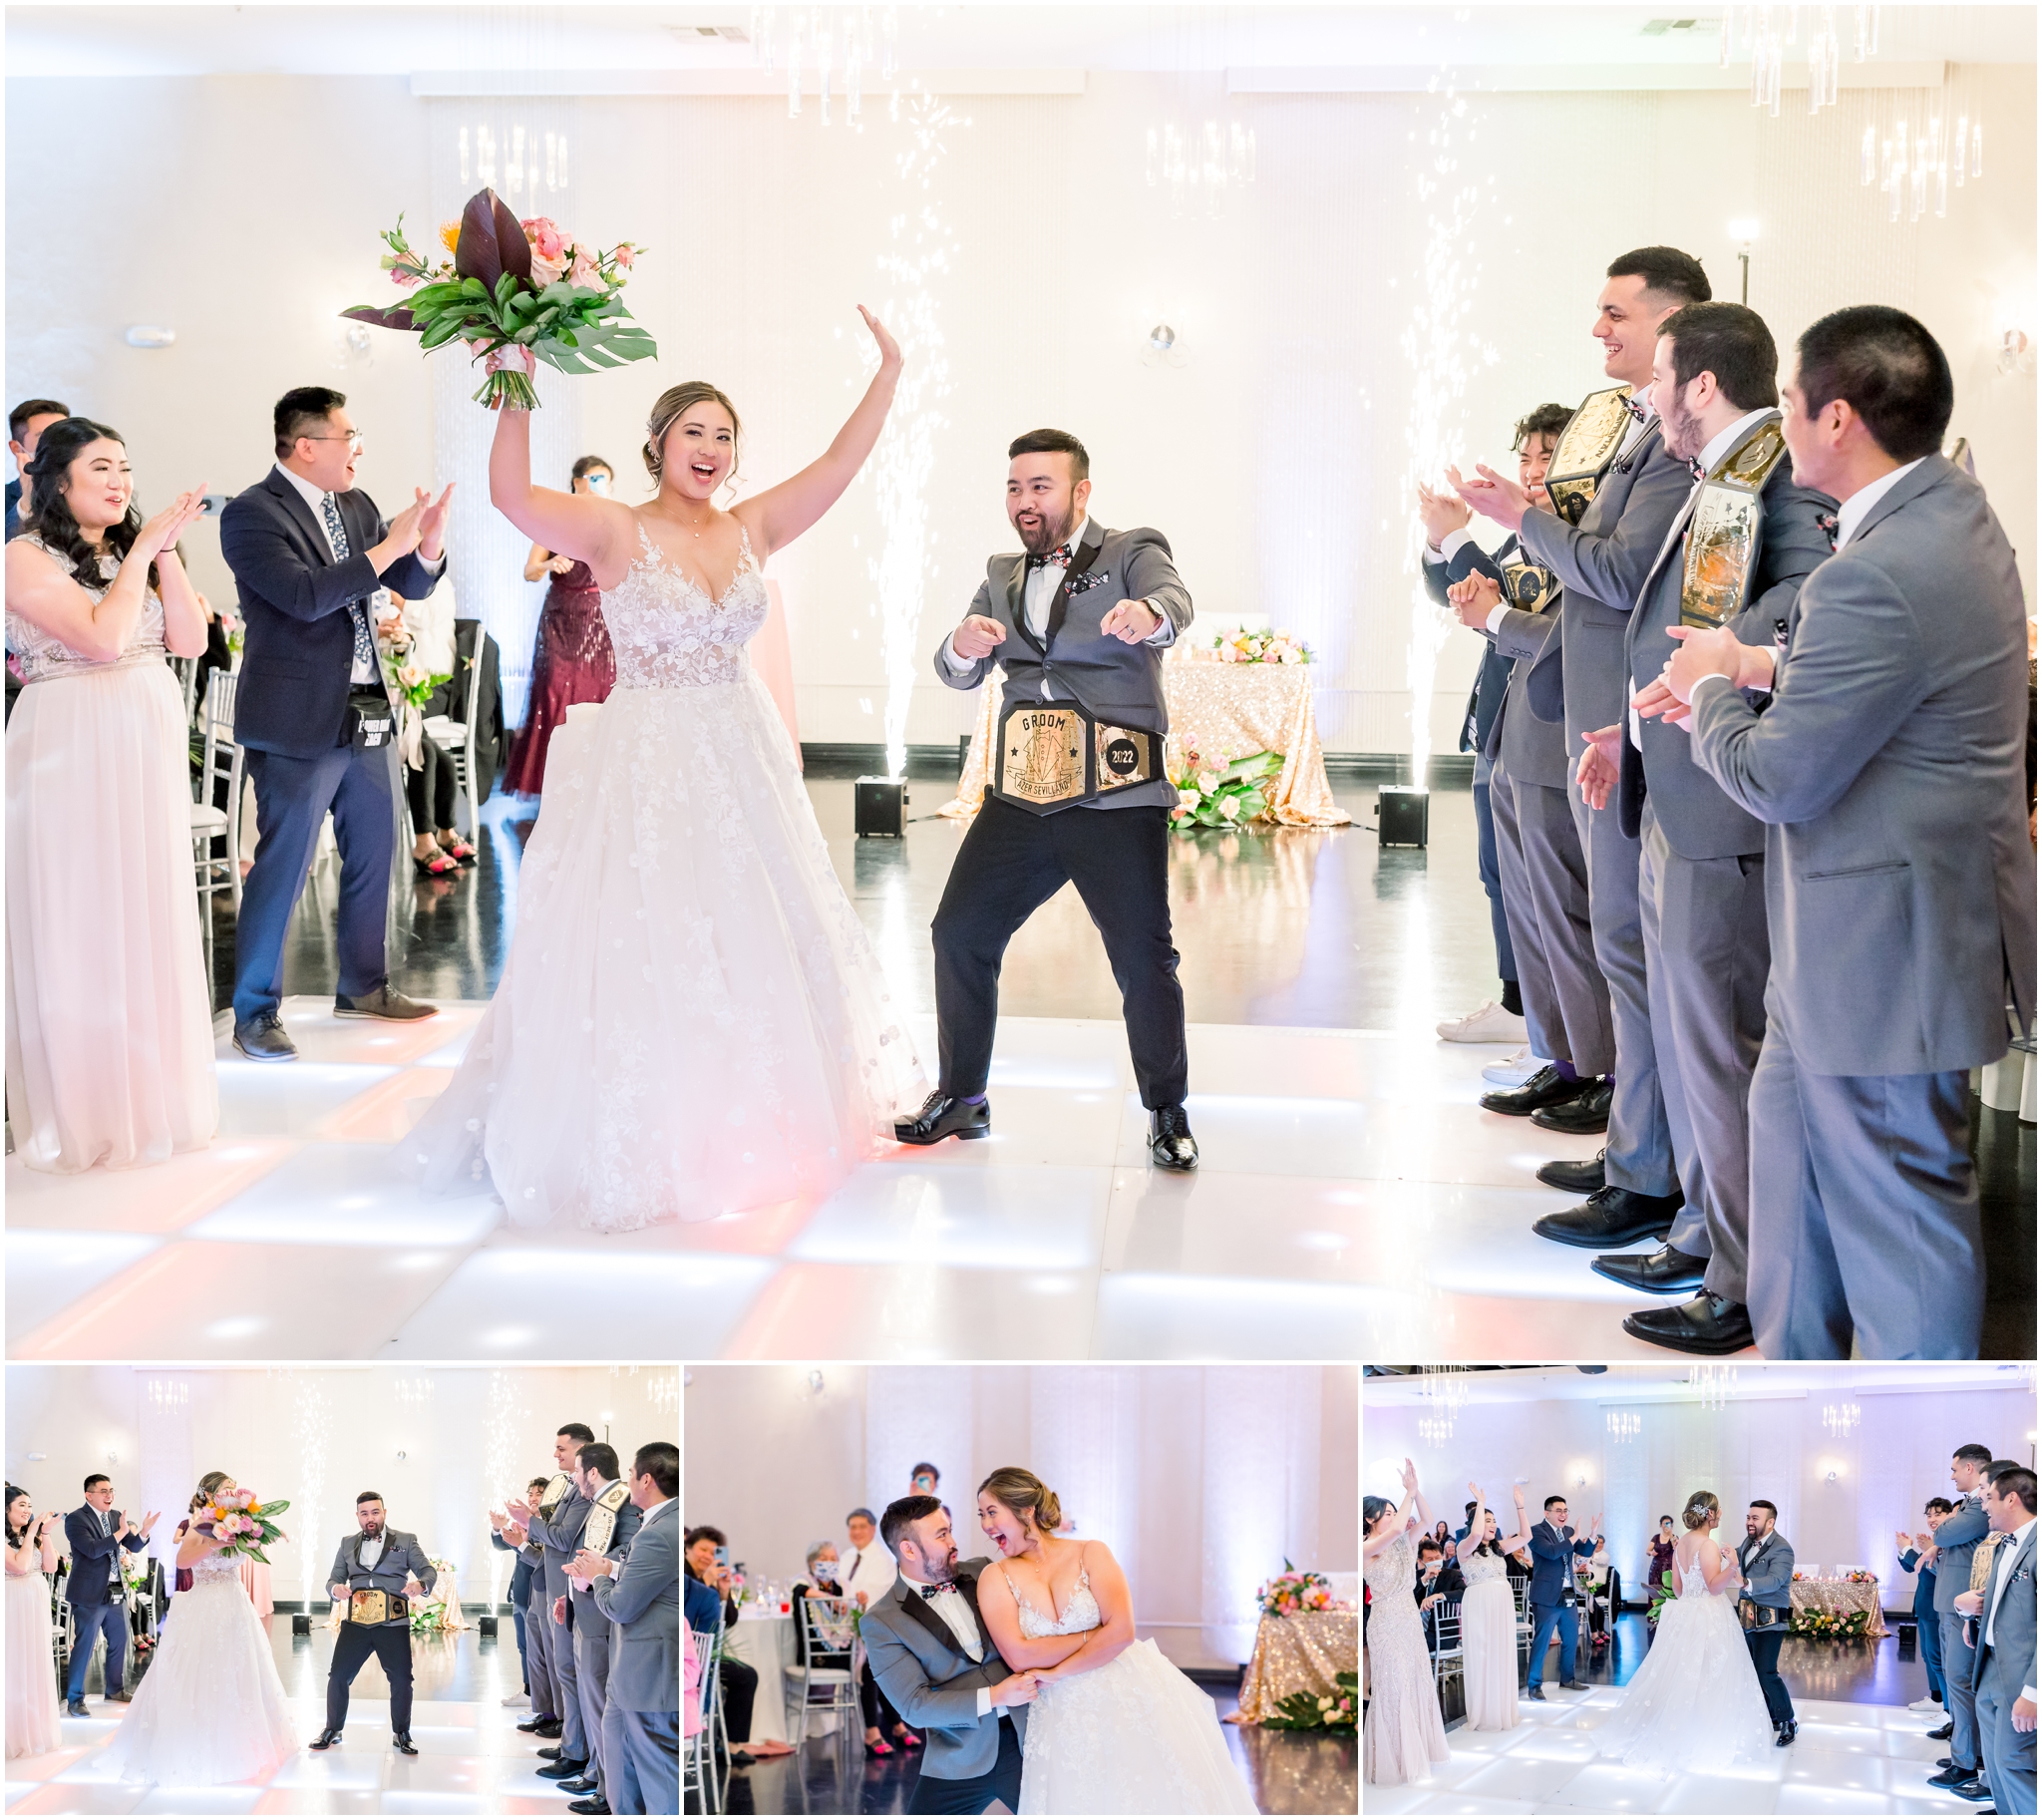 Bride Groom Dancing at Reception